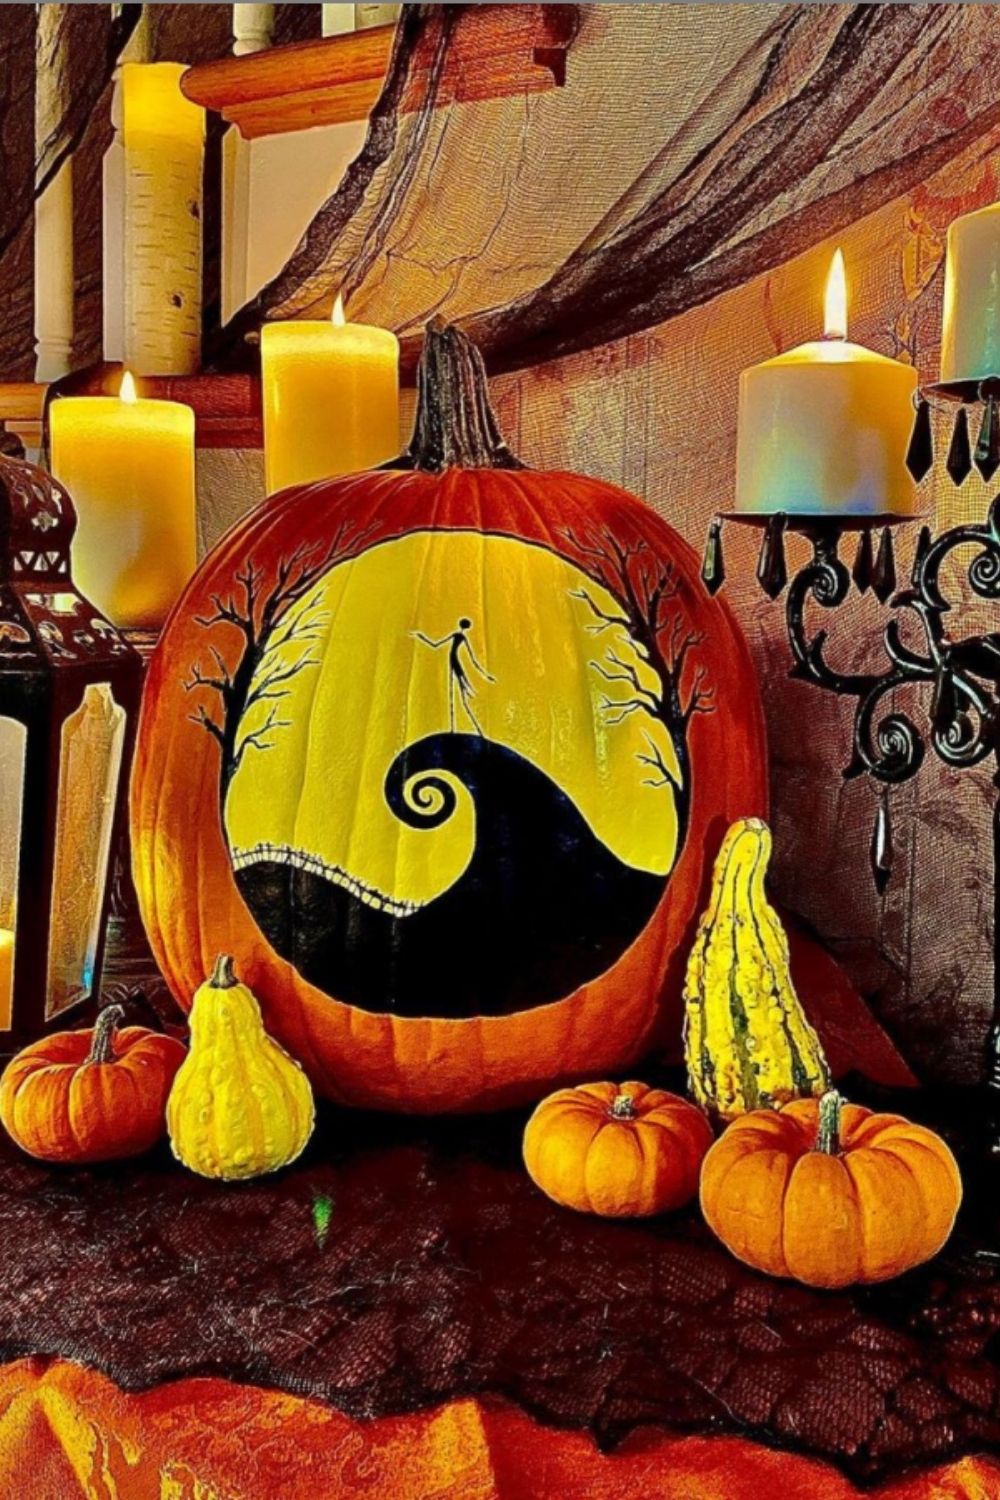 Abstract pumpkin drawings